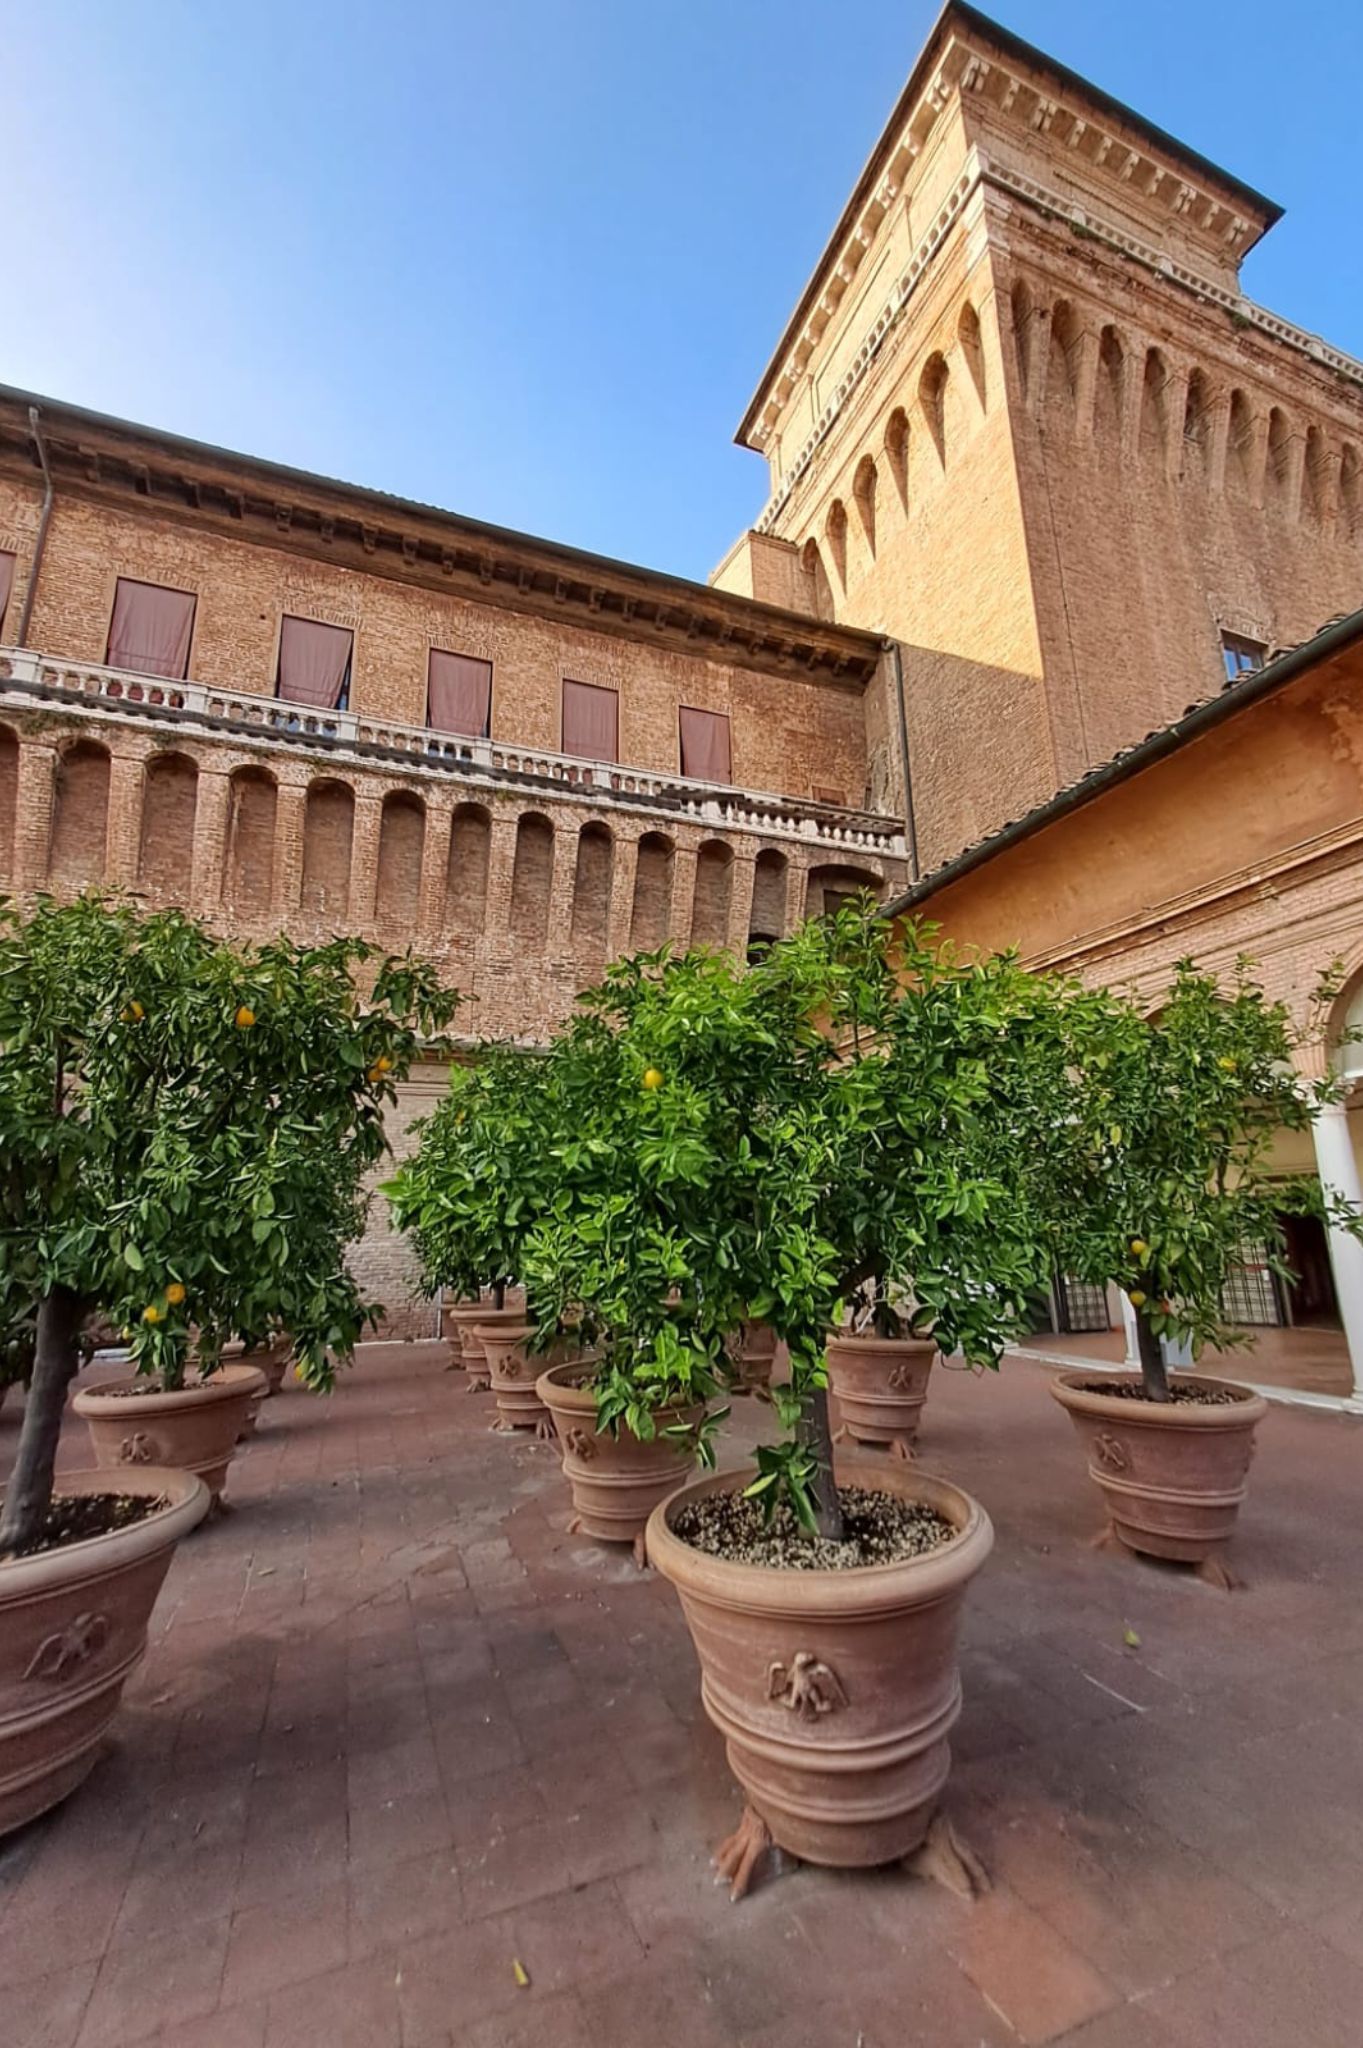 Castello Etense di Ferrara giardino degli aranci